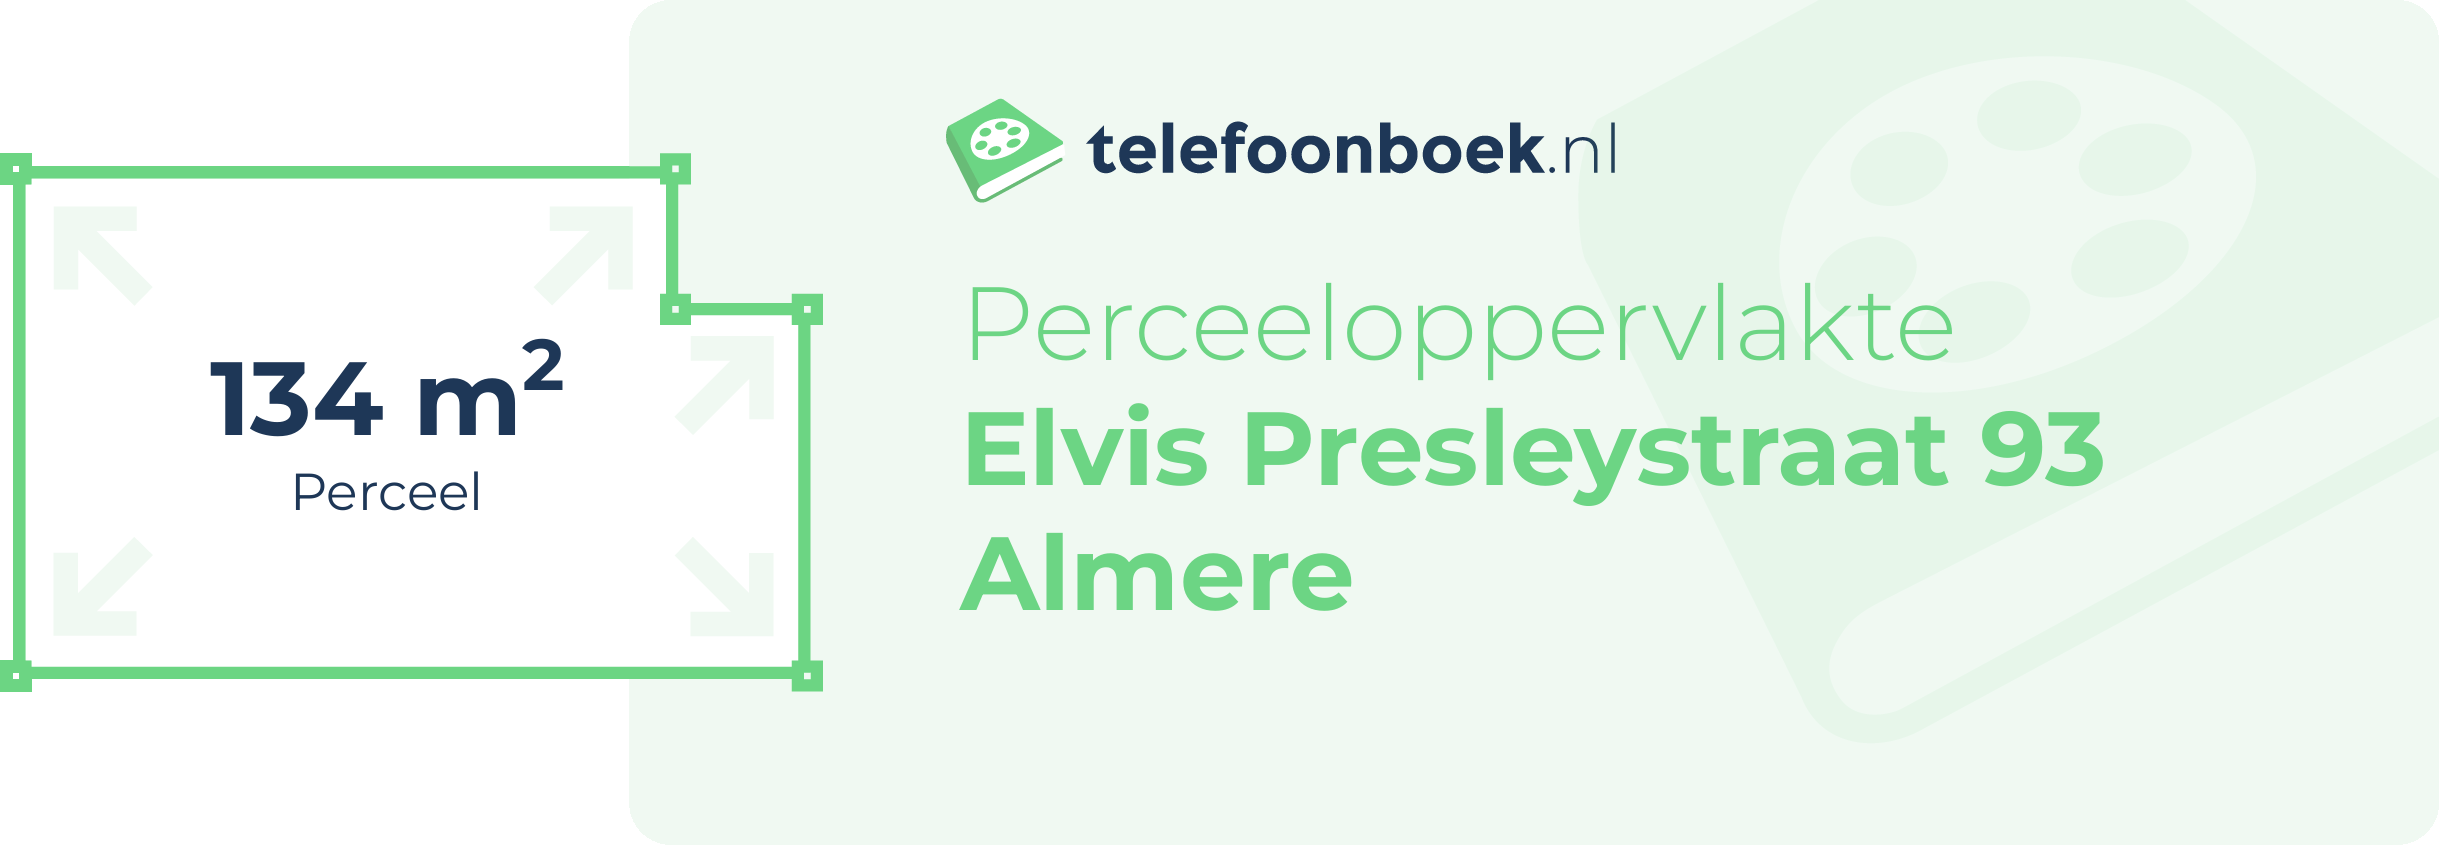 Perceeloppervlakte Elvis Presleystraat 93 Almere